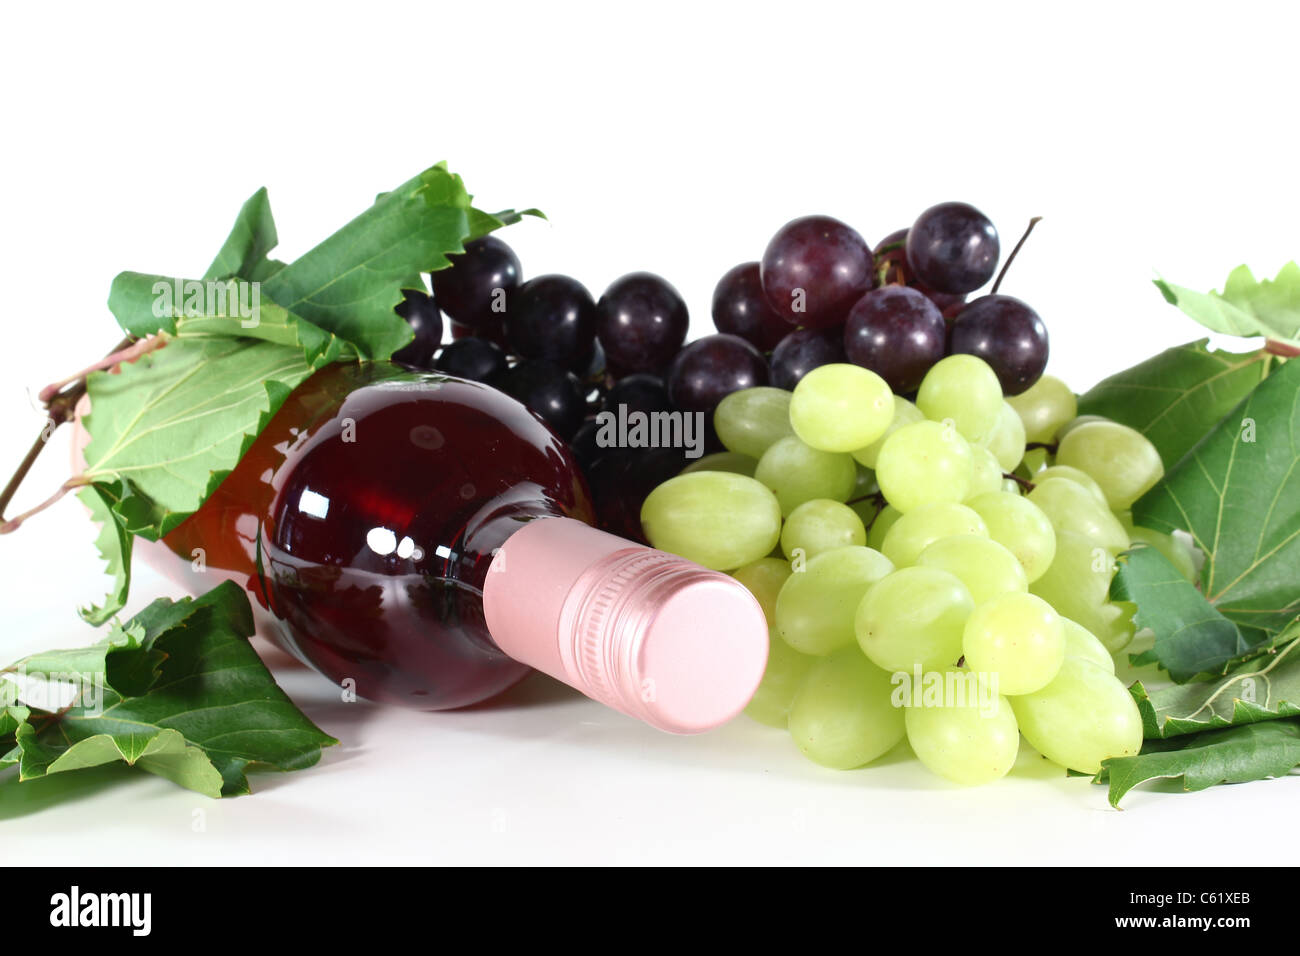 eine Flasche rose Wein, Trauben und Wein Ranke auf weißem Hintergrund  Stockfotografie - Alamy